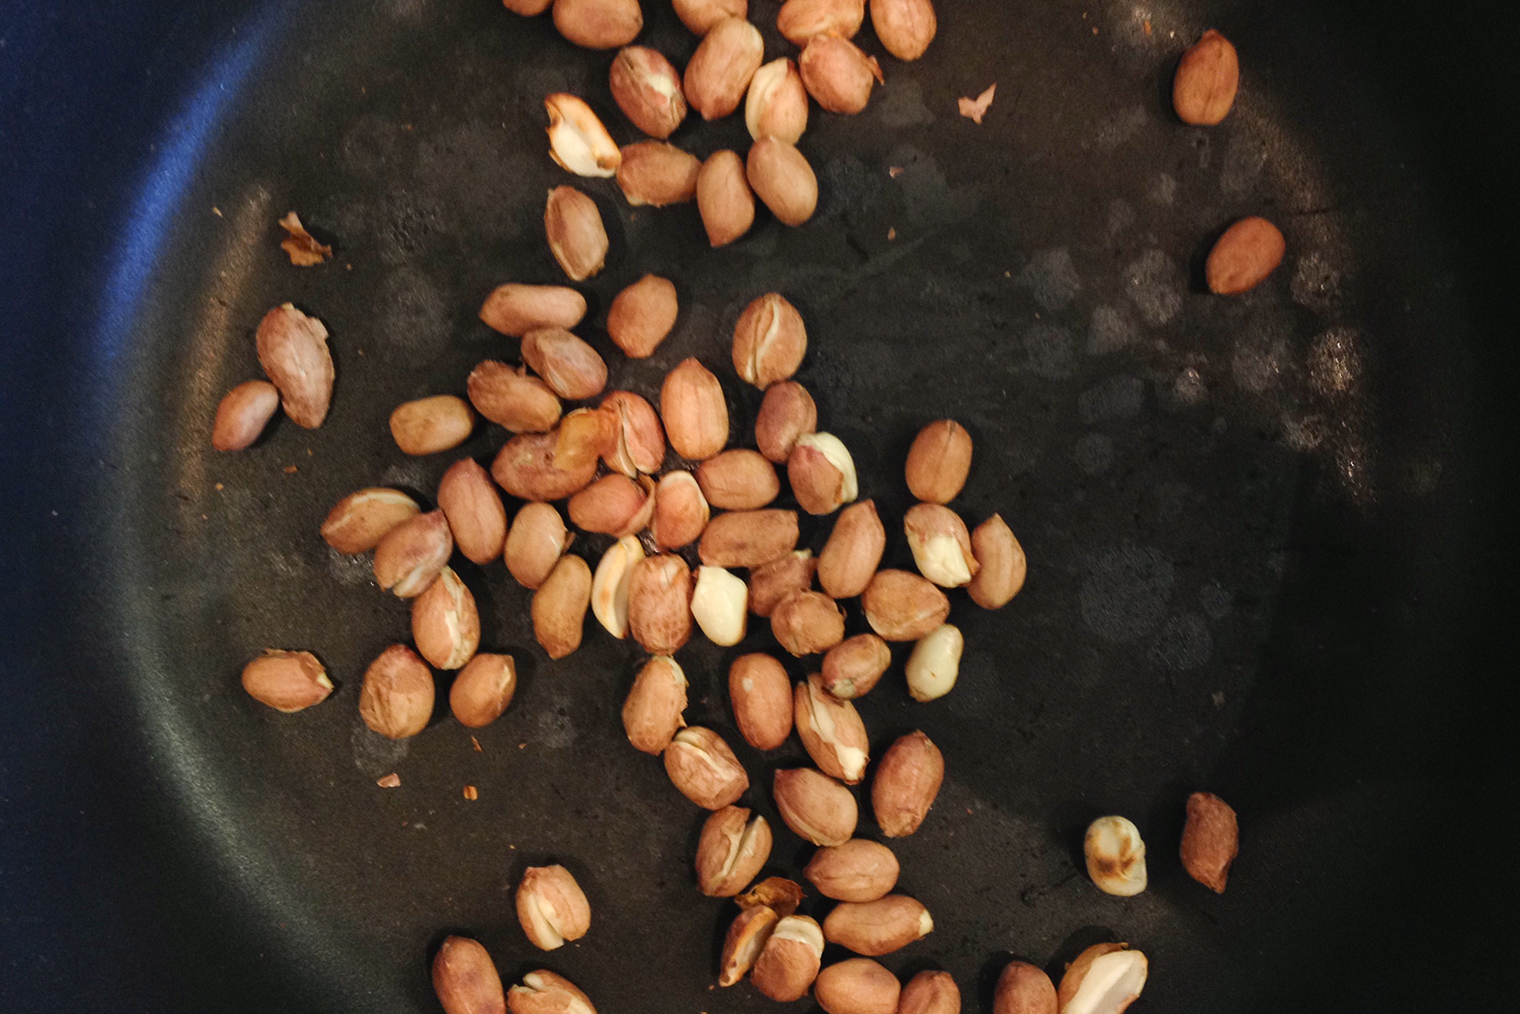 Арахис, как и орехи, тоже можно запечь в нагревающейся духовке. Понадобятся температура до 150 °C и 5-7 минут